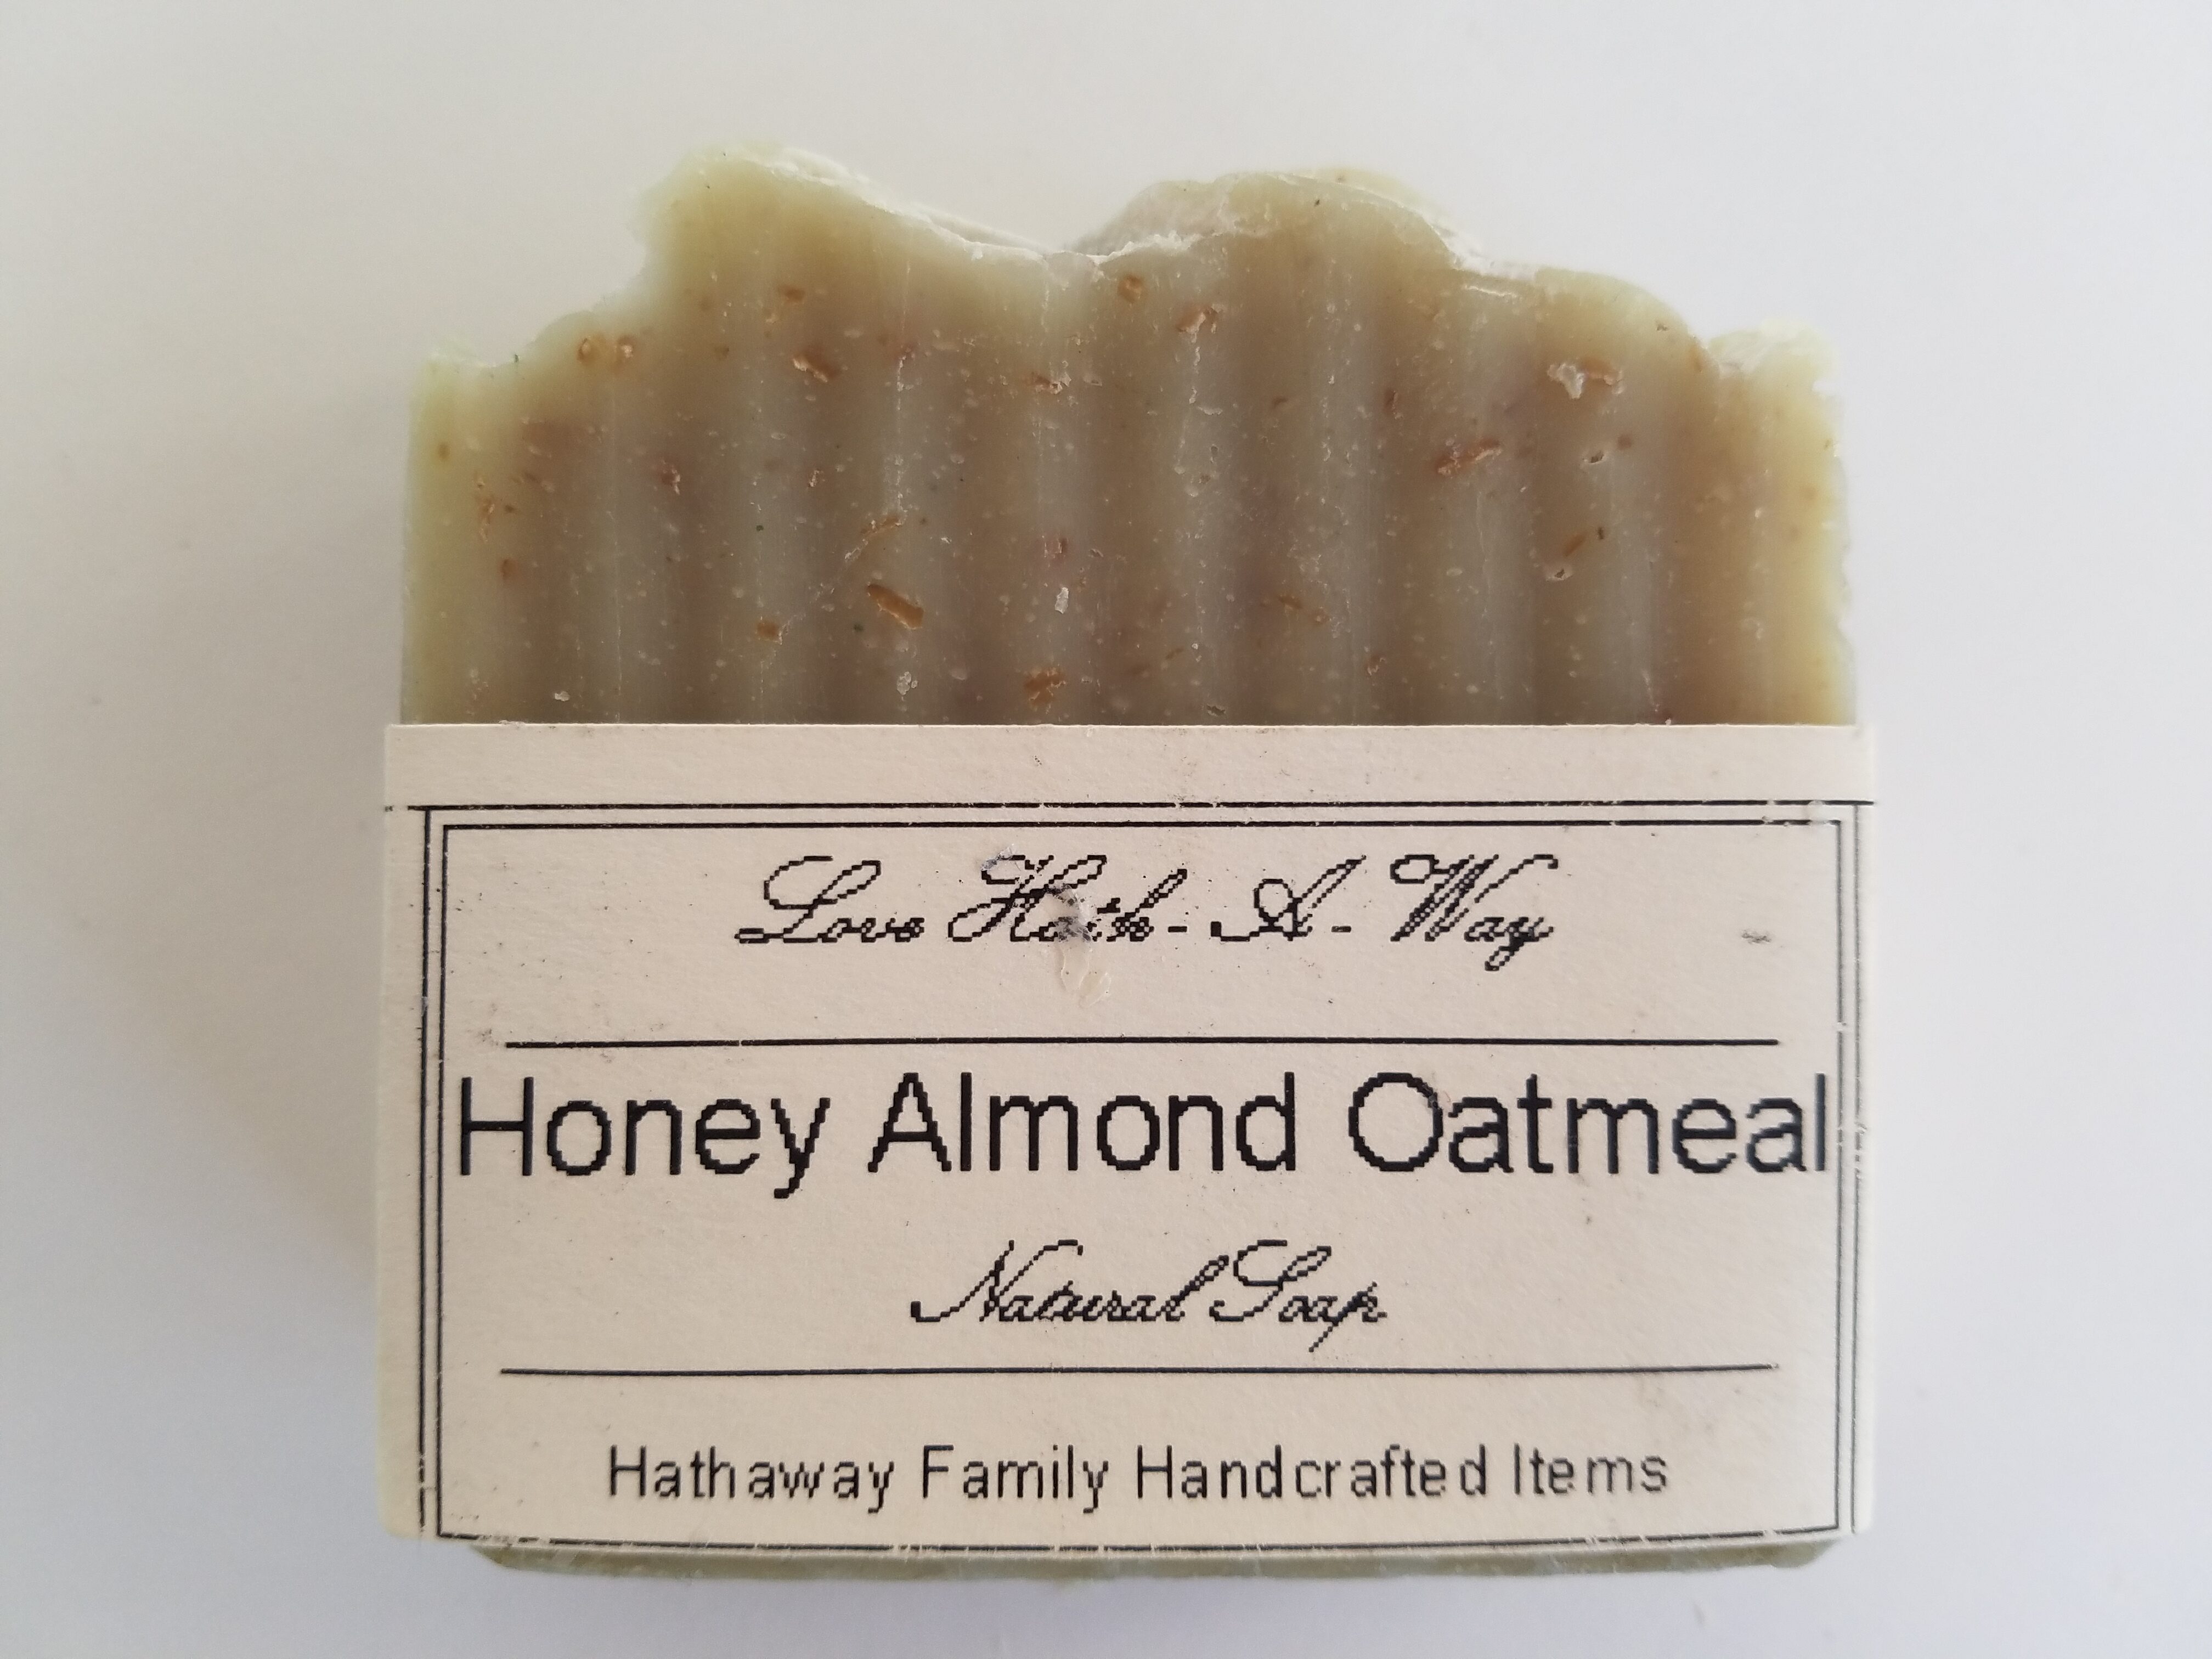 Honey Almond Oatmeal Soap